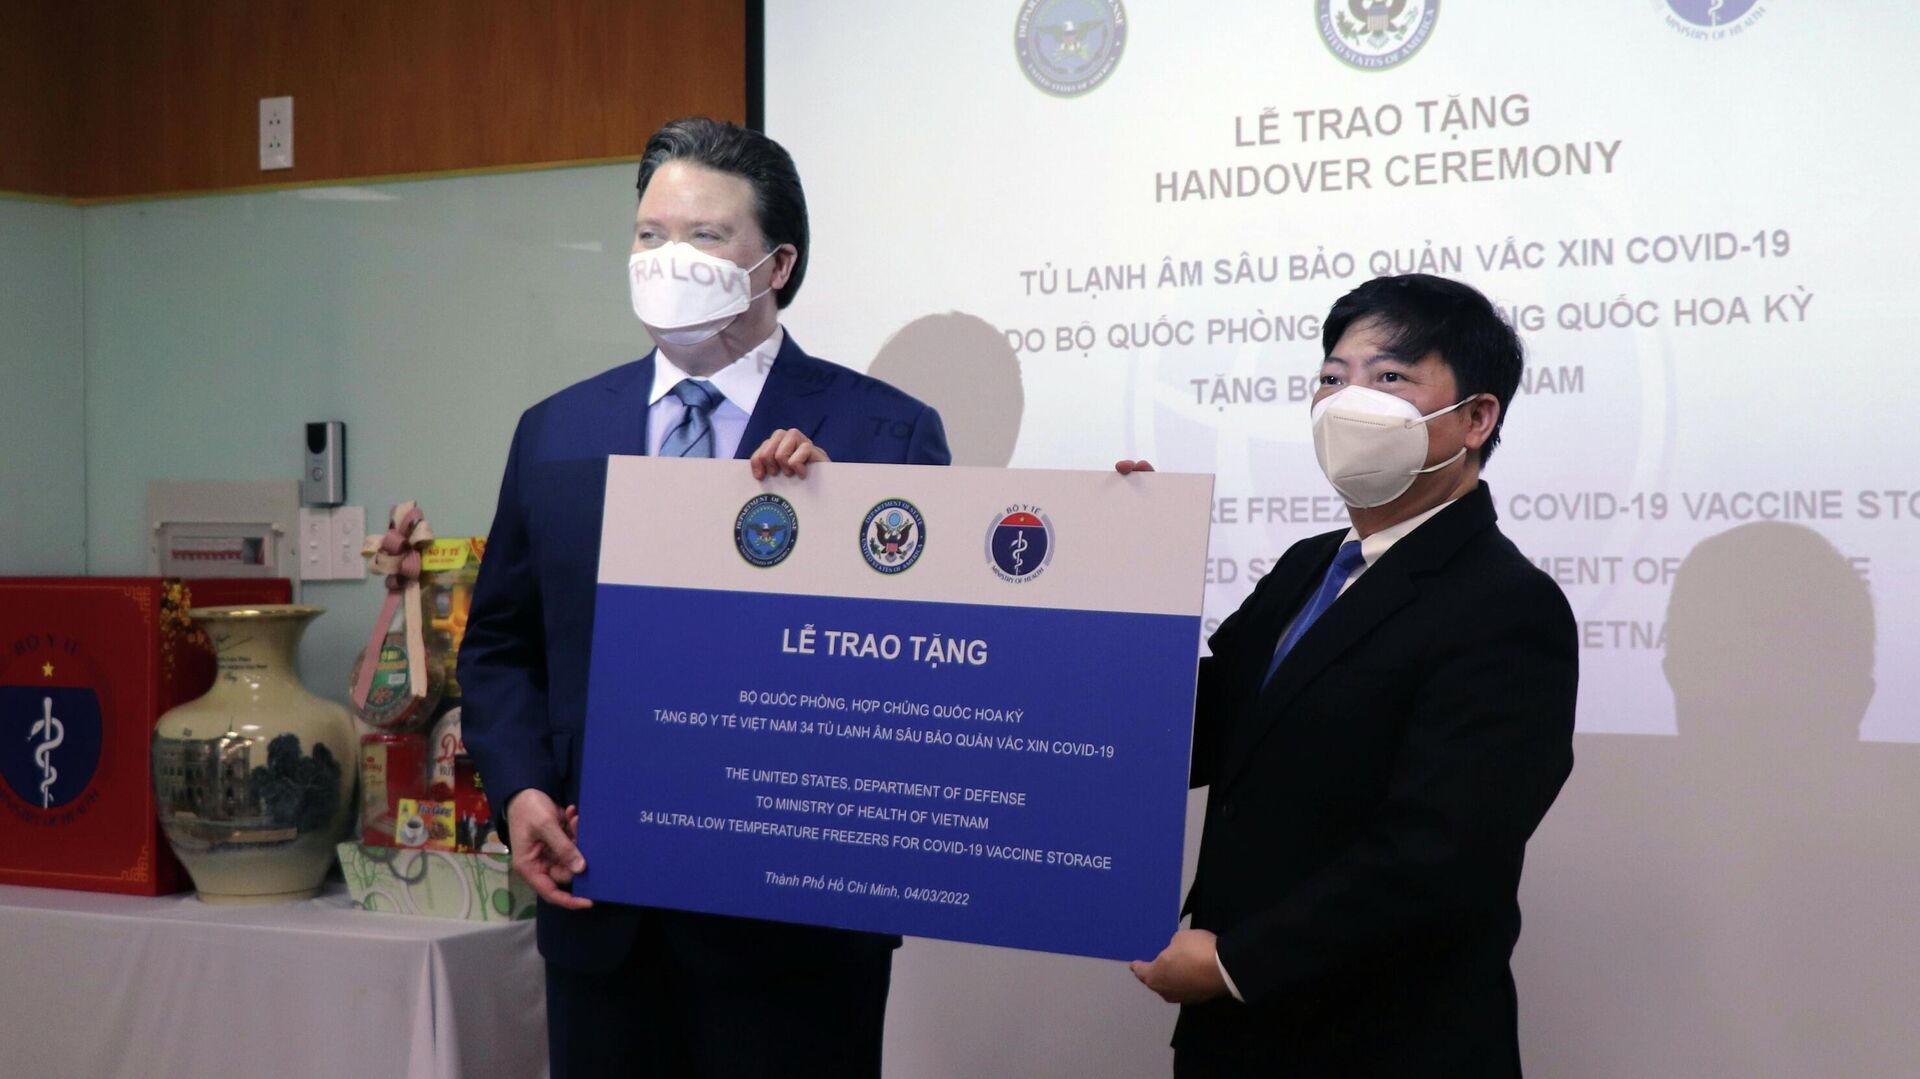 Bộ Y tế Việt Nam tiếp nhận tủ đông âm sâu bảo quản vaccine từ Bộ Quốc phòng Hoa Kỳ - Sputnik Việt Nam, 1920, 04.03.2022